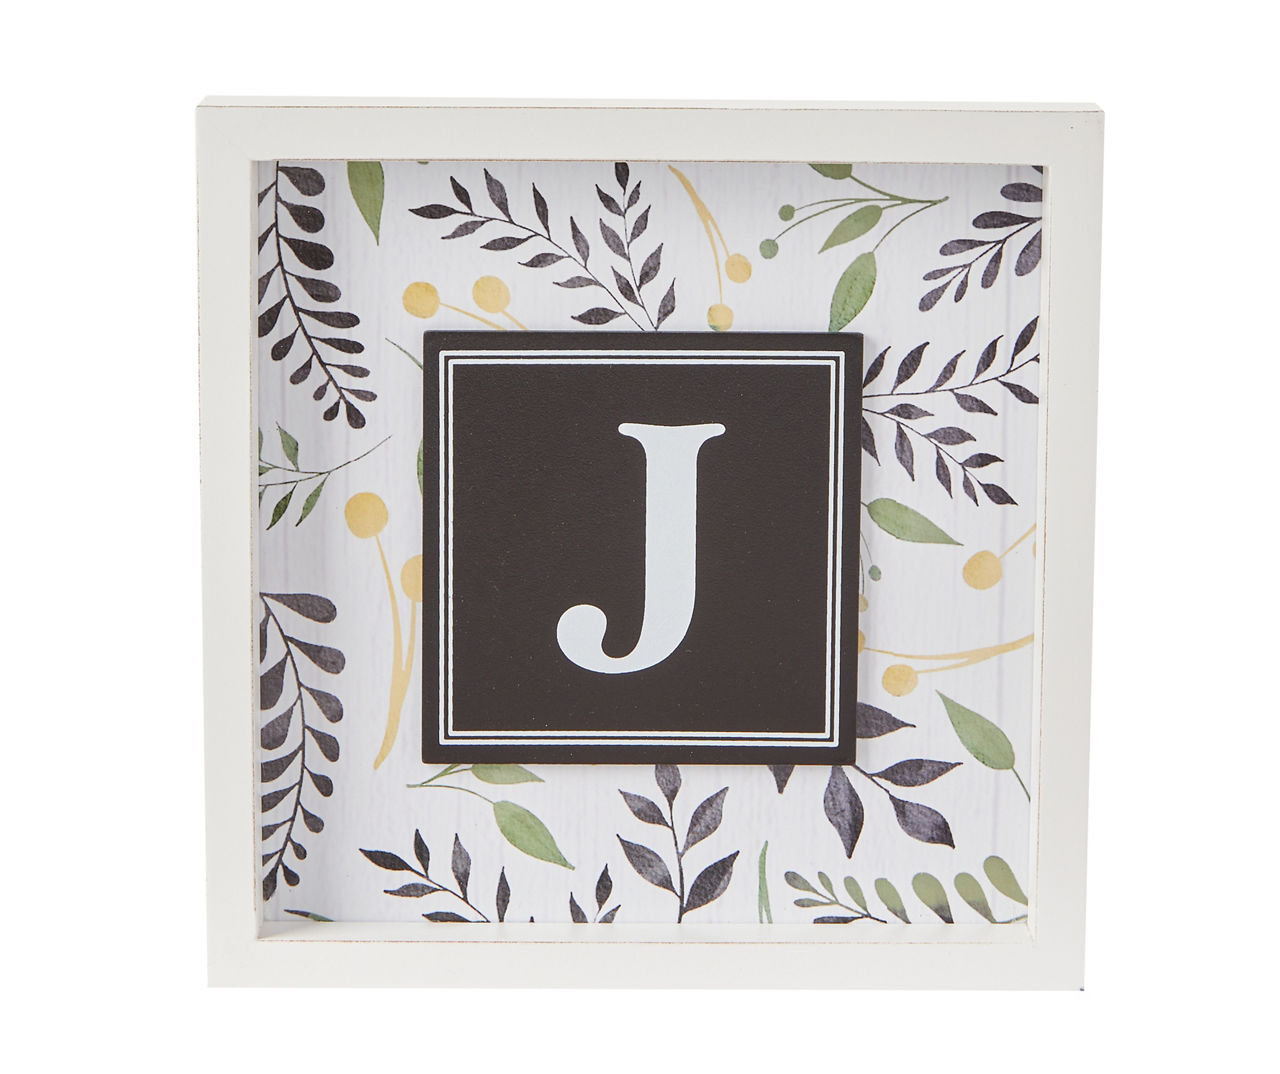 "J" White & Black Leaf Monogram Framed Wall Plaque